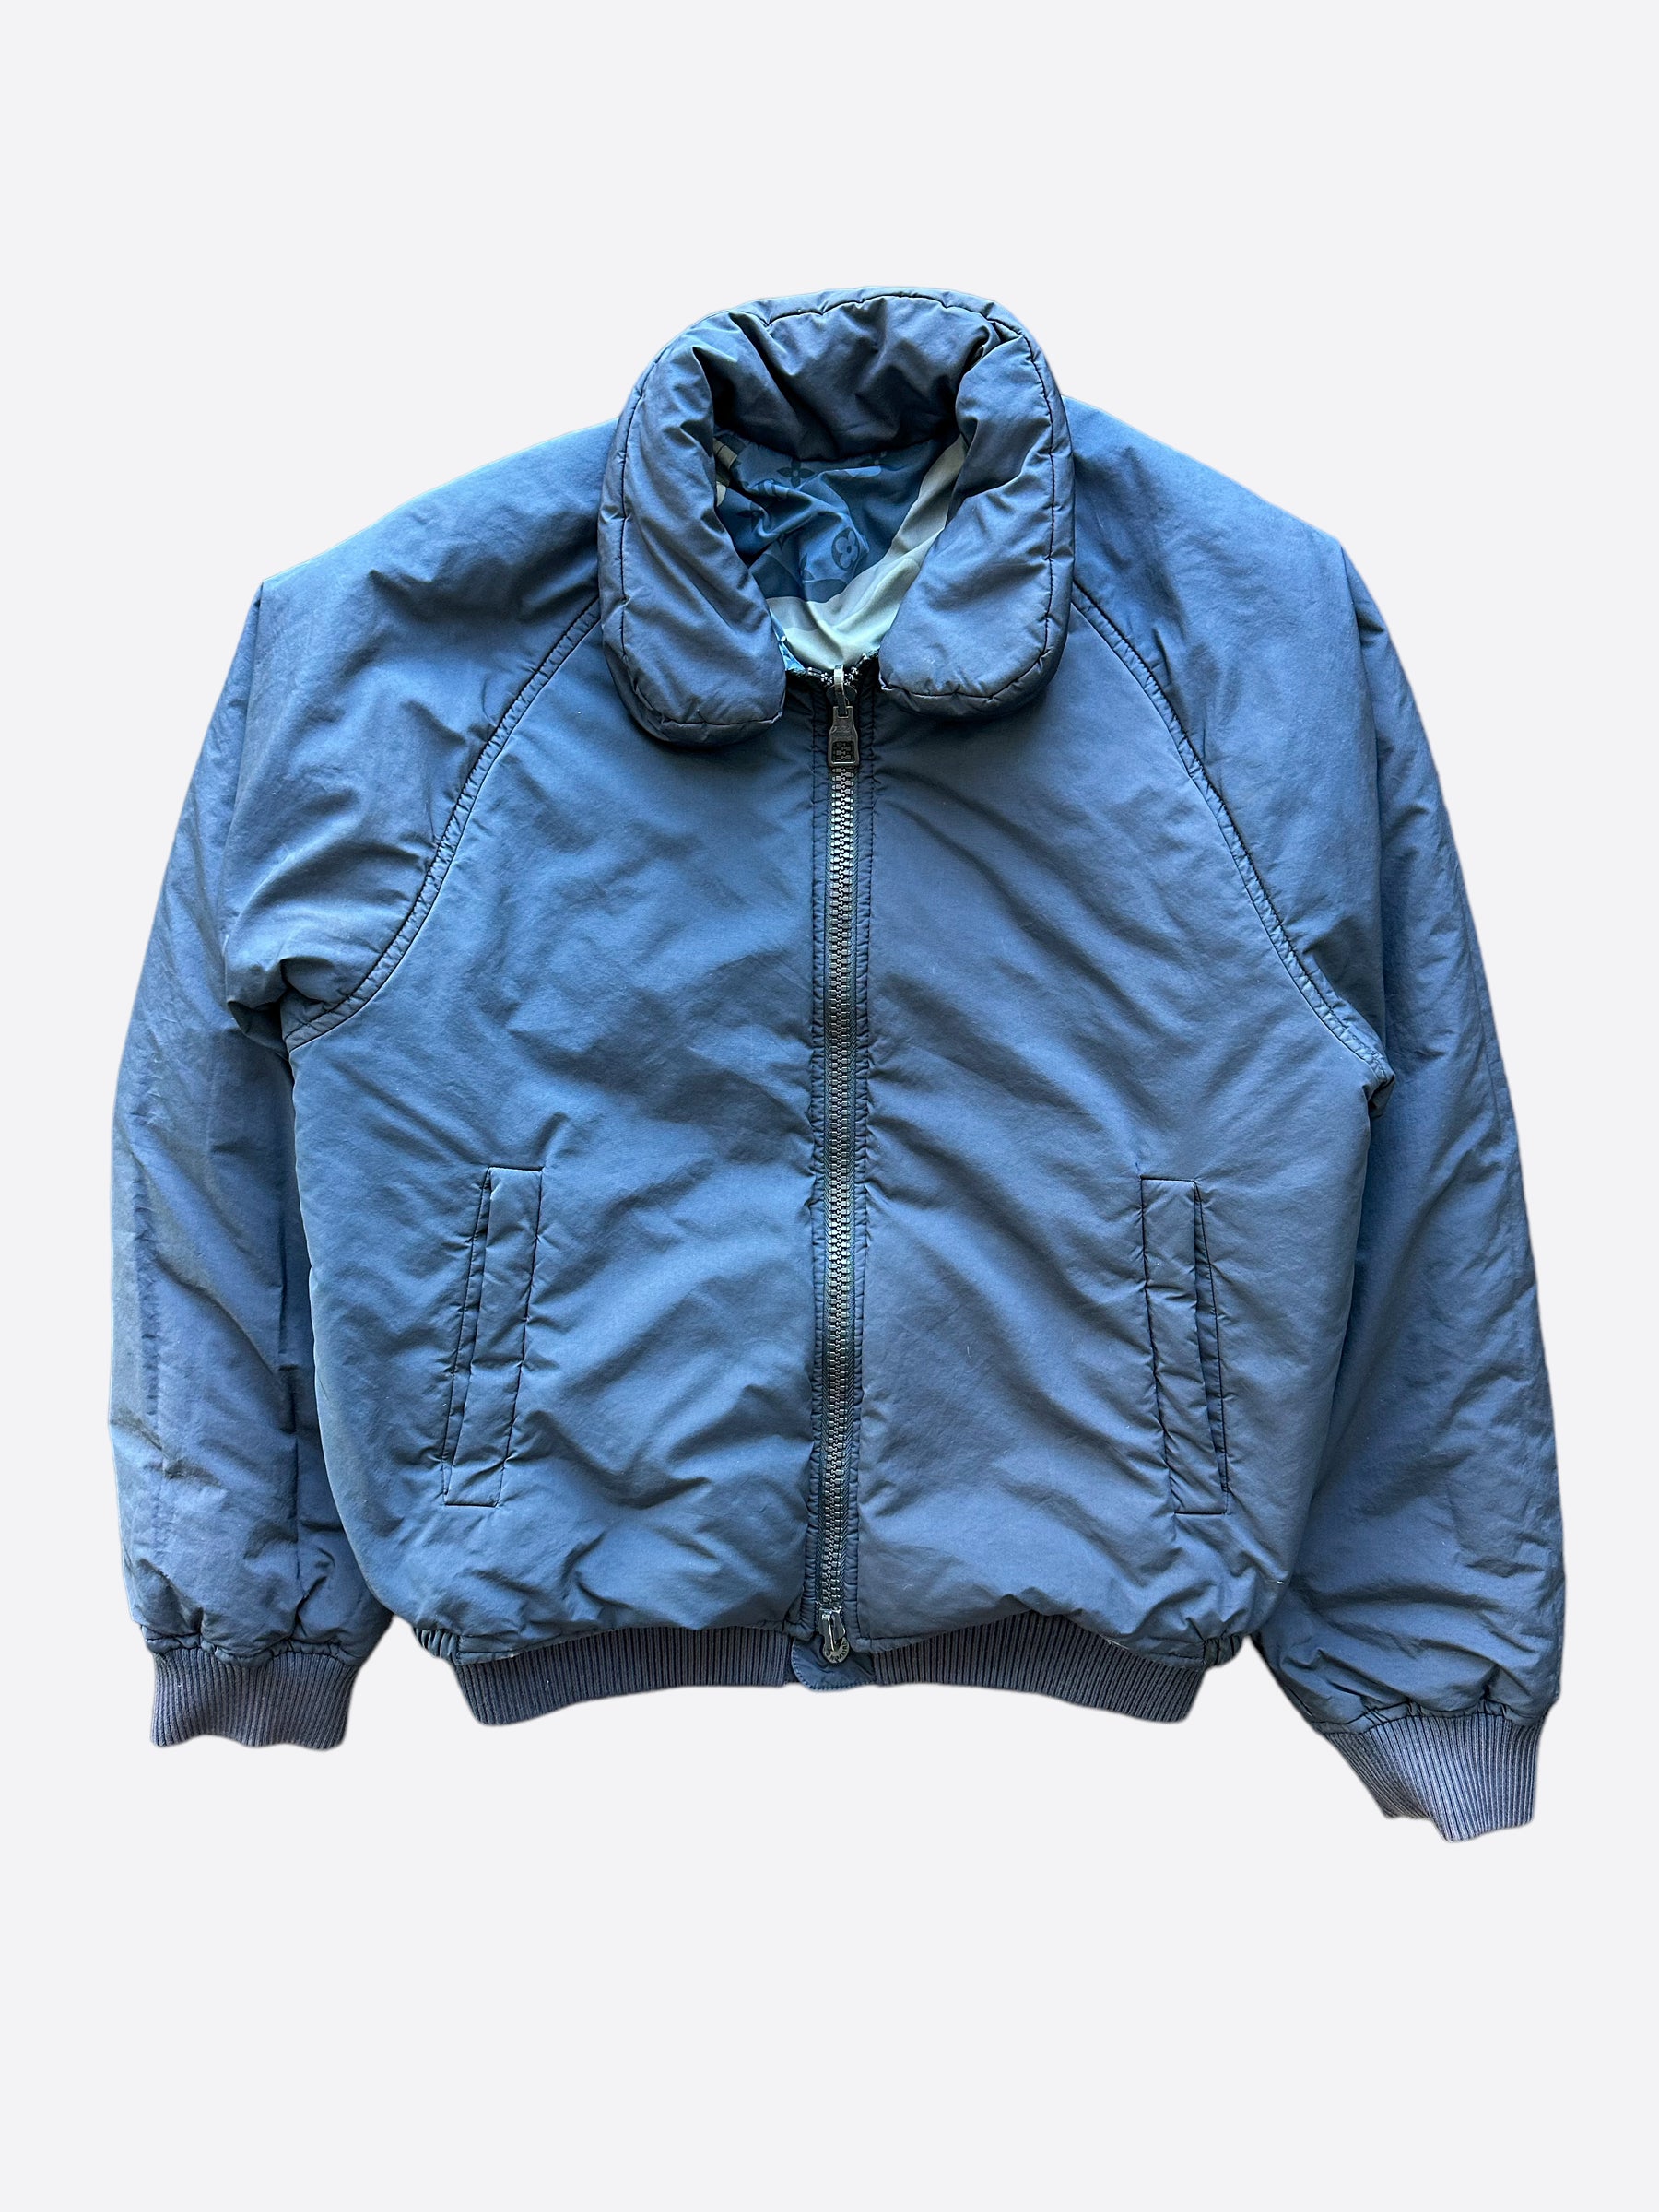 vuitton monogram reversible jacket